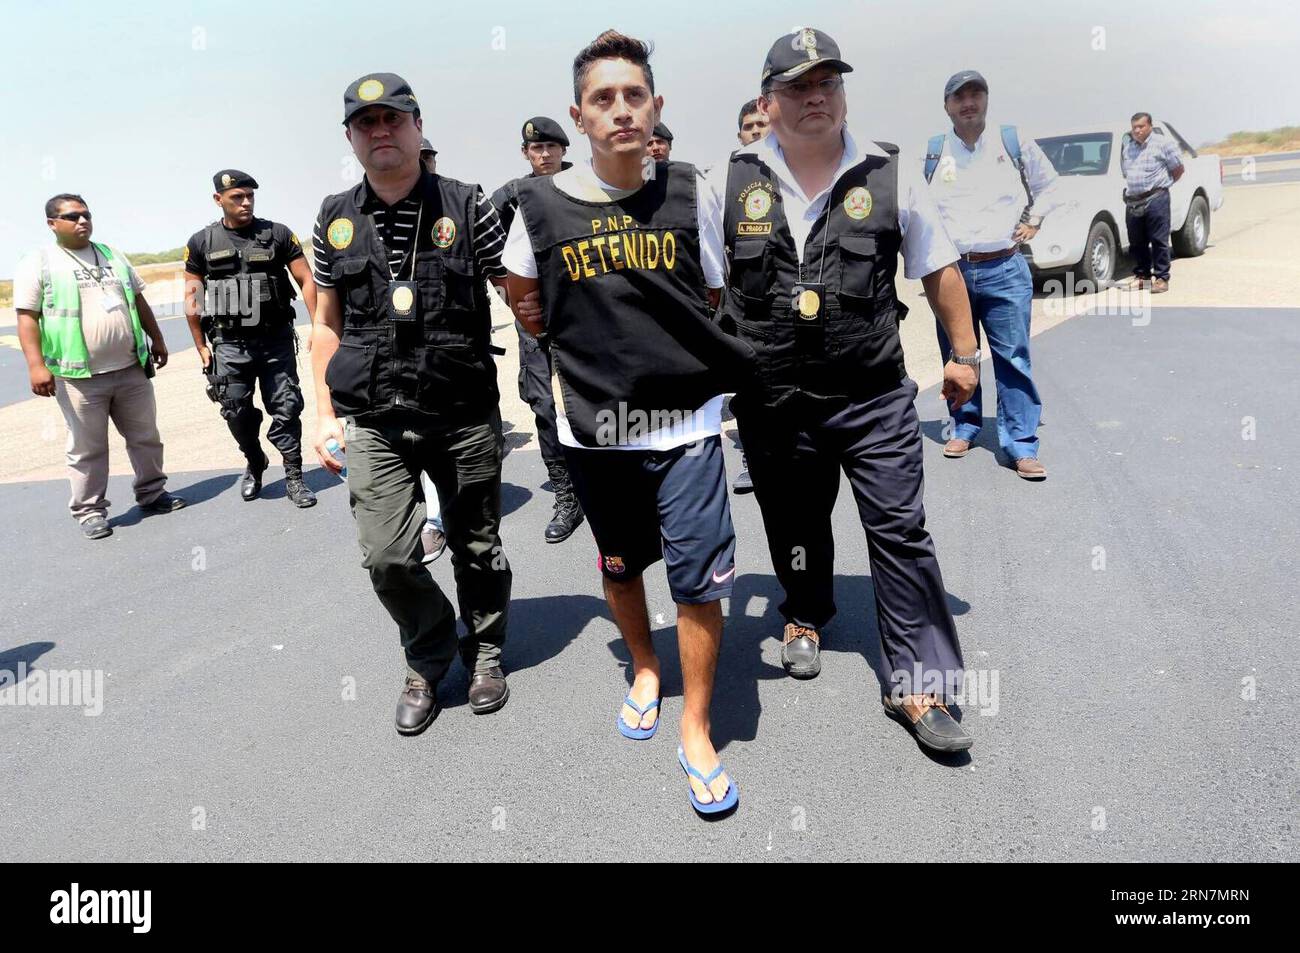 AKTUELLES ZEITGESCHEHEN Drogenschmuggler Gerald Oropeza in Peru verhaftet (150914) -- TUMBES, 13 settembre 2015 -- poliziotti guardia presunto trafficante di droga Gerald Oropeza (C) a Tumbes, Perù, il 13 settembre 2015. Gerald Oropeza, un presunto trafficante di droga nella lista dei più ricercati del Perù, è stato arrestato in un'operazione congiunta tra un'unità anti-narcotici ecuadoriana e peruviana nello stato ecuadoriano di Santa Elena. Juan Carlos Guzman Negrini/ANDINA) (da) (ce) PERU-TUMBES-ECUADOR-SECURITY-ARREST e ANDINA PUBLICATIONxNOTxINxCHN notizie attualità trafficanti di droga Gerald Oropeza in Perù arrestato 150914 Foto Stock